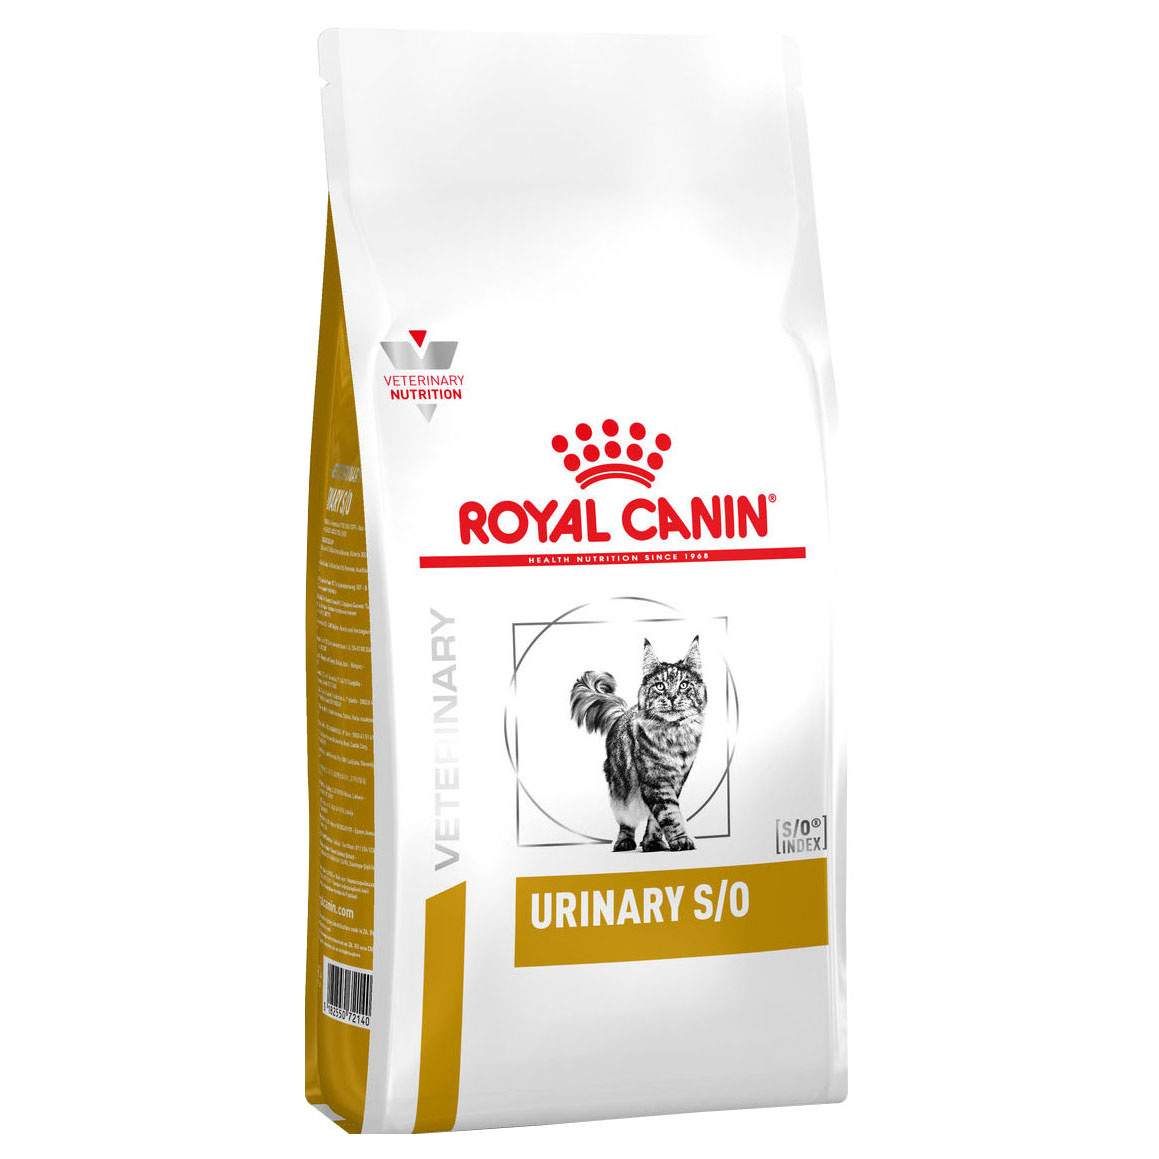 Royal Canin Urinary S/O LP34 корм для кошек при заболеваниях мочевыделительной системы (400 гр)